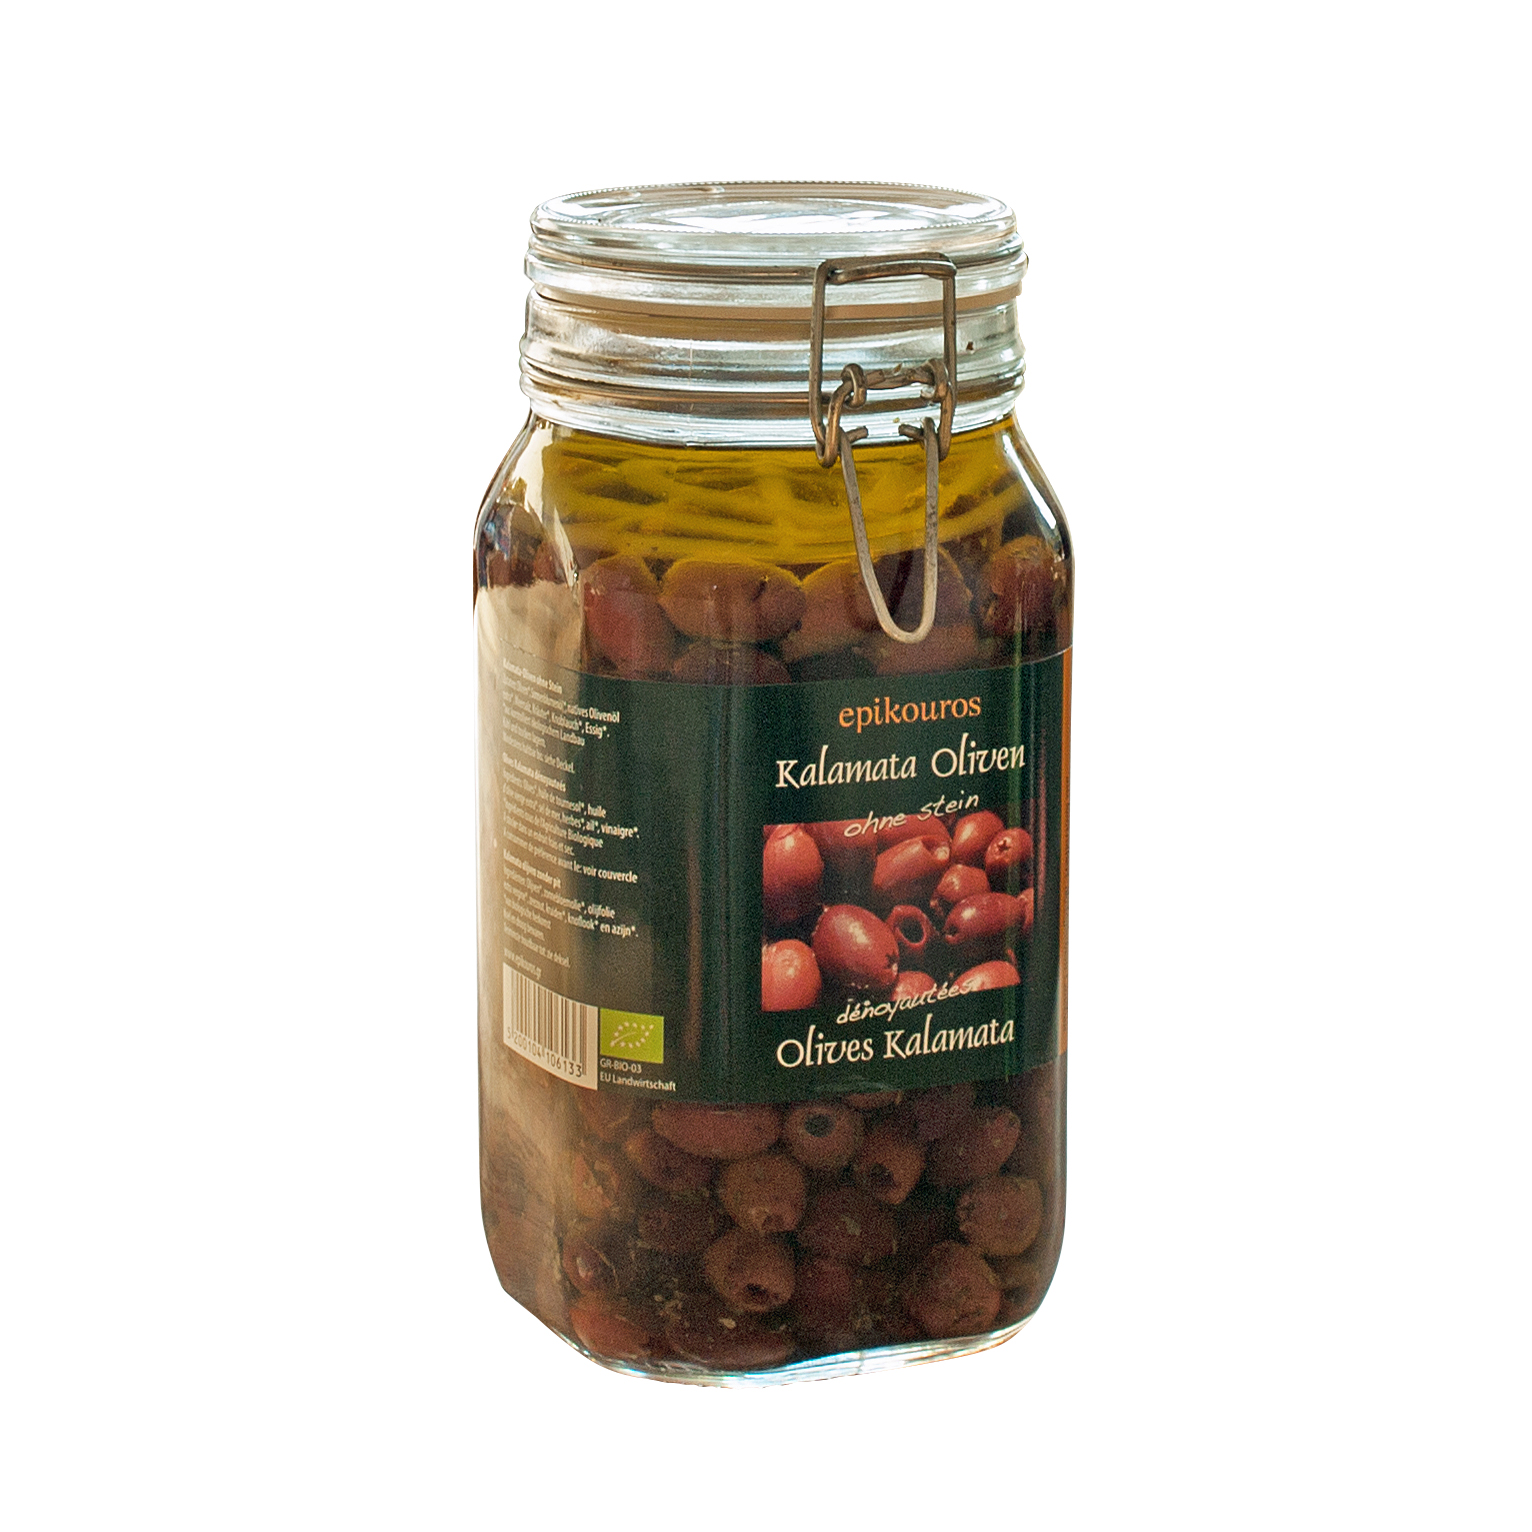 Øko RAW upasteuriseret Kalamata oliven uden sten i olie med urter.